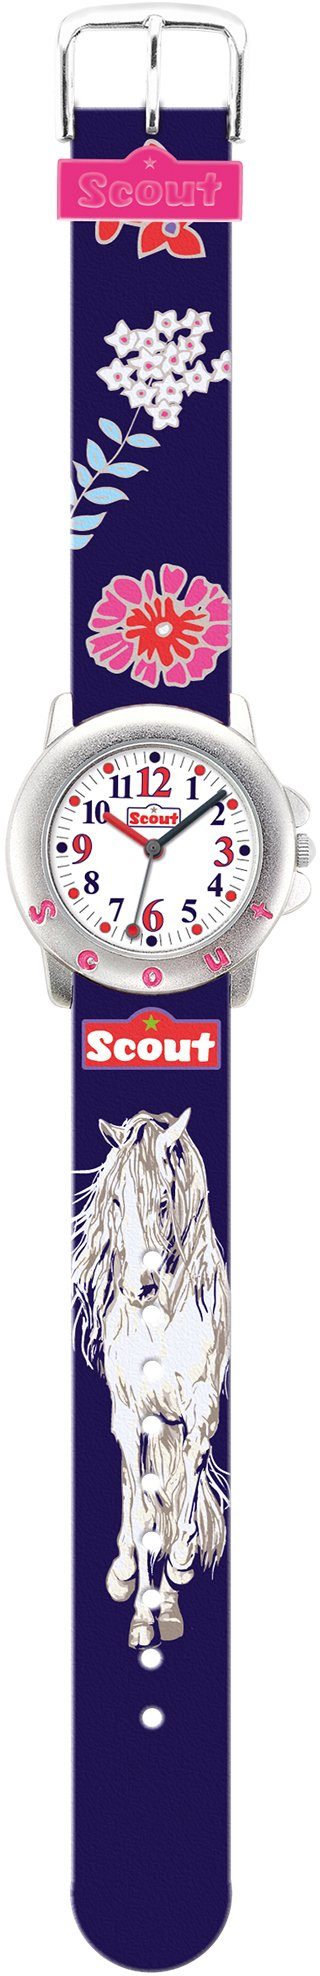 Scout Quarzuhr Star 280393006, Pferdeuhr, auch Kids, ideal mit Pferdemotiv, Geschenk als